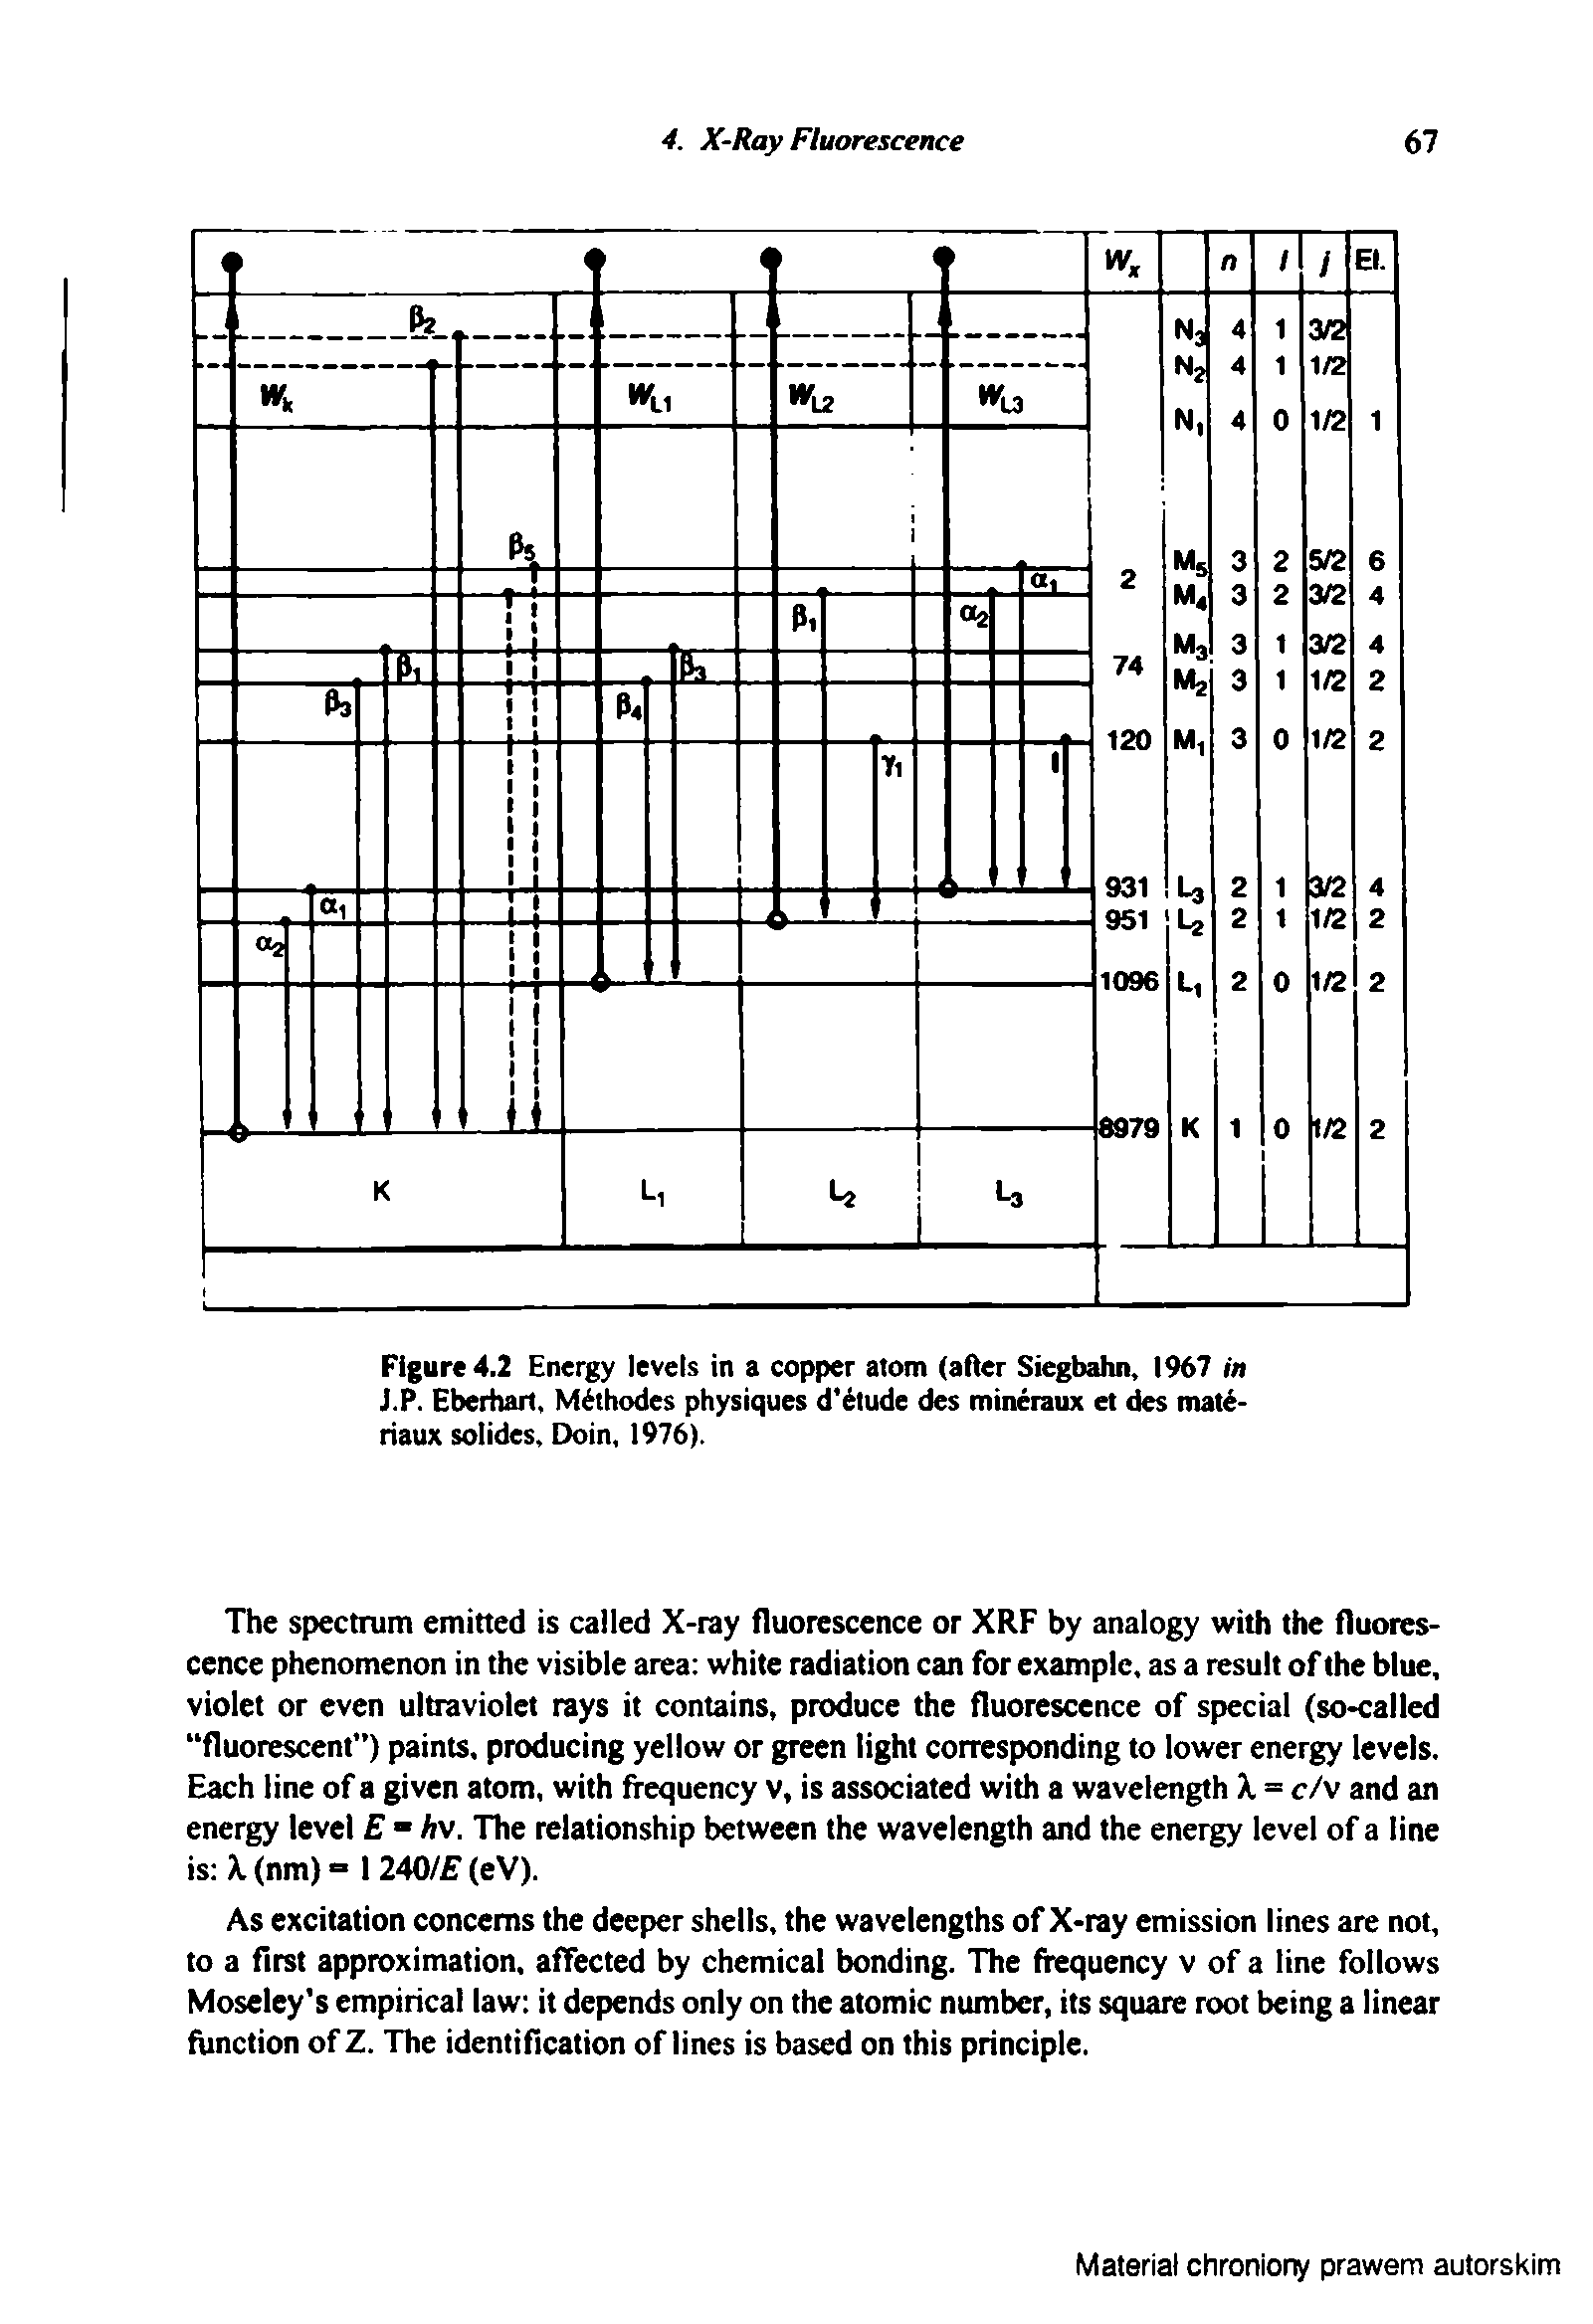 Figure 4.2 Energy levels in a copper atom (after Siegbahn 1%7 in J.P. Eberhart, M thodes physiques d tude des mineraux et des mat -riaux soIides Doin, 1976).